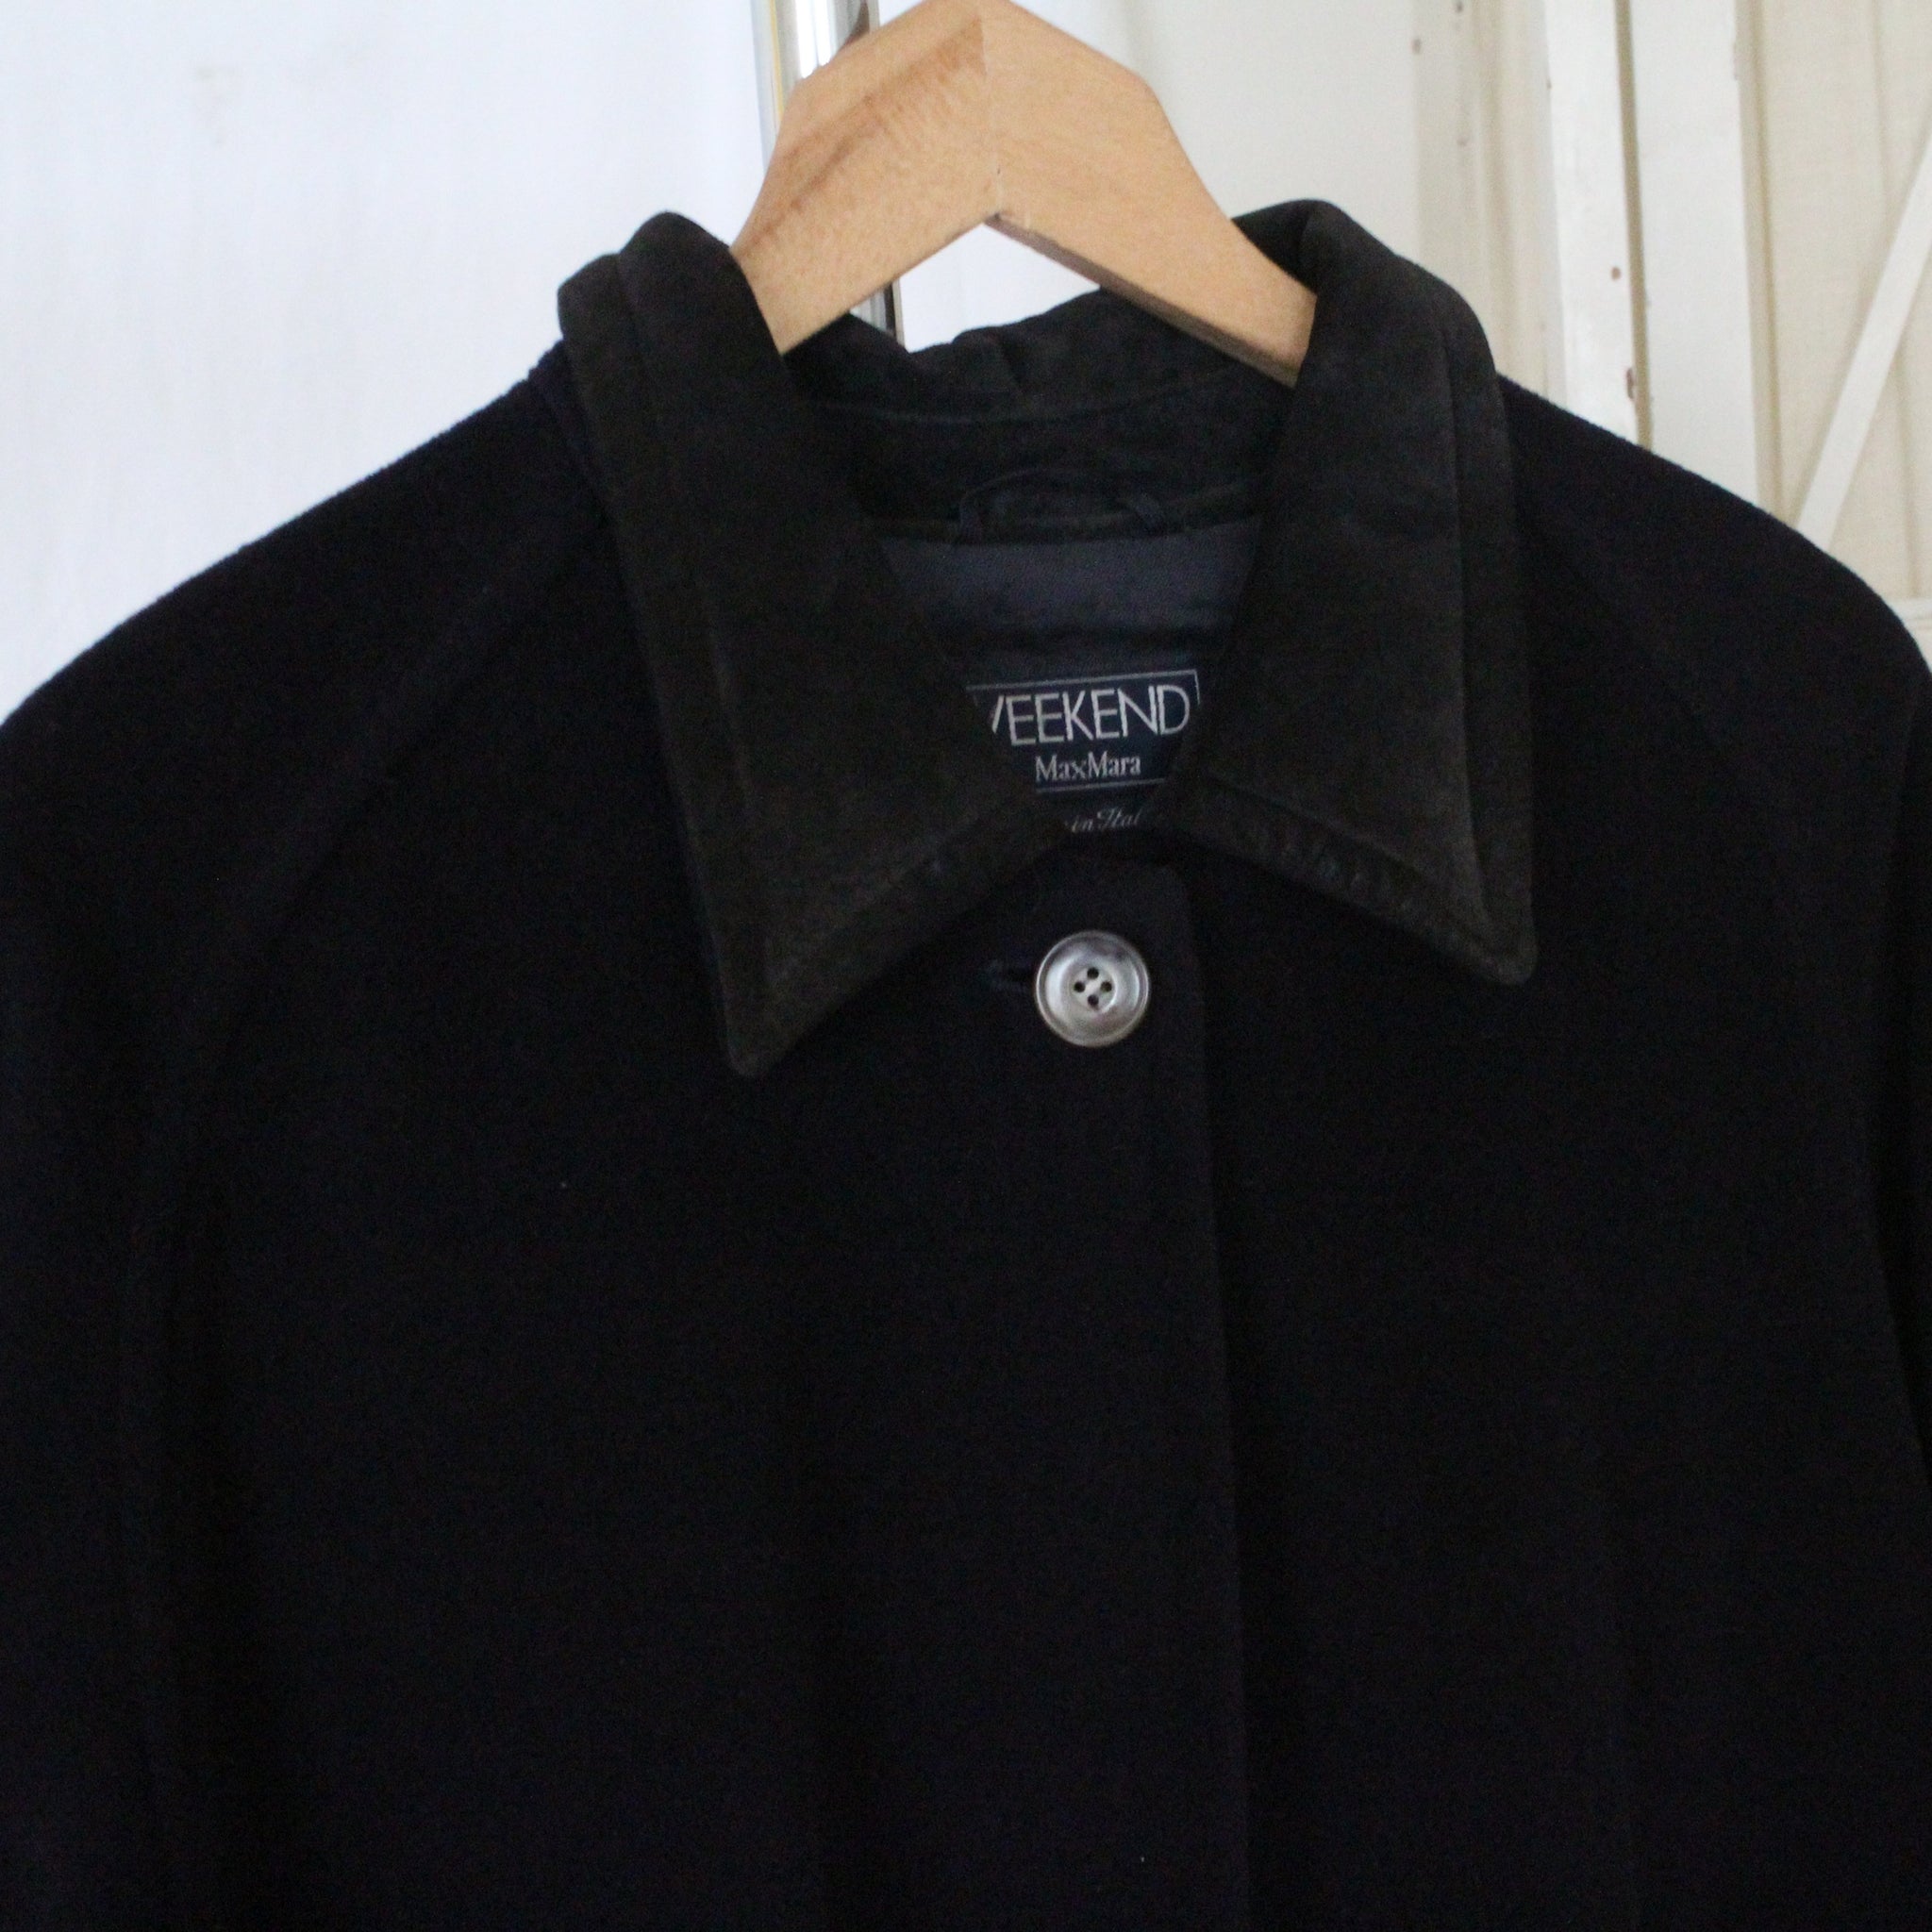 Vintage Max Mara Weekend wool coat, size M/L – Yohara Vintage